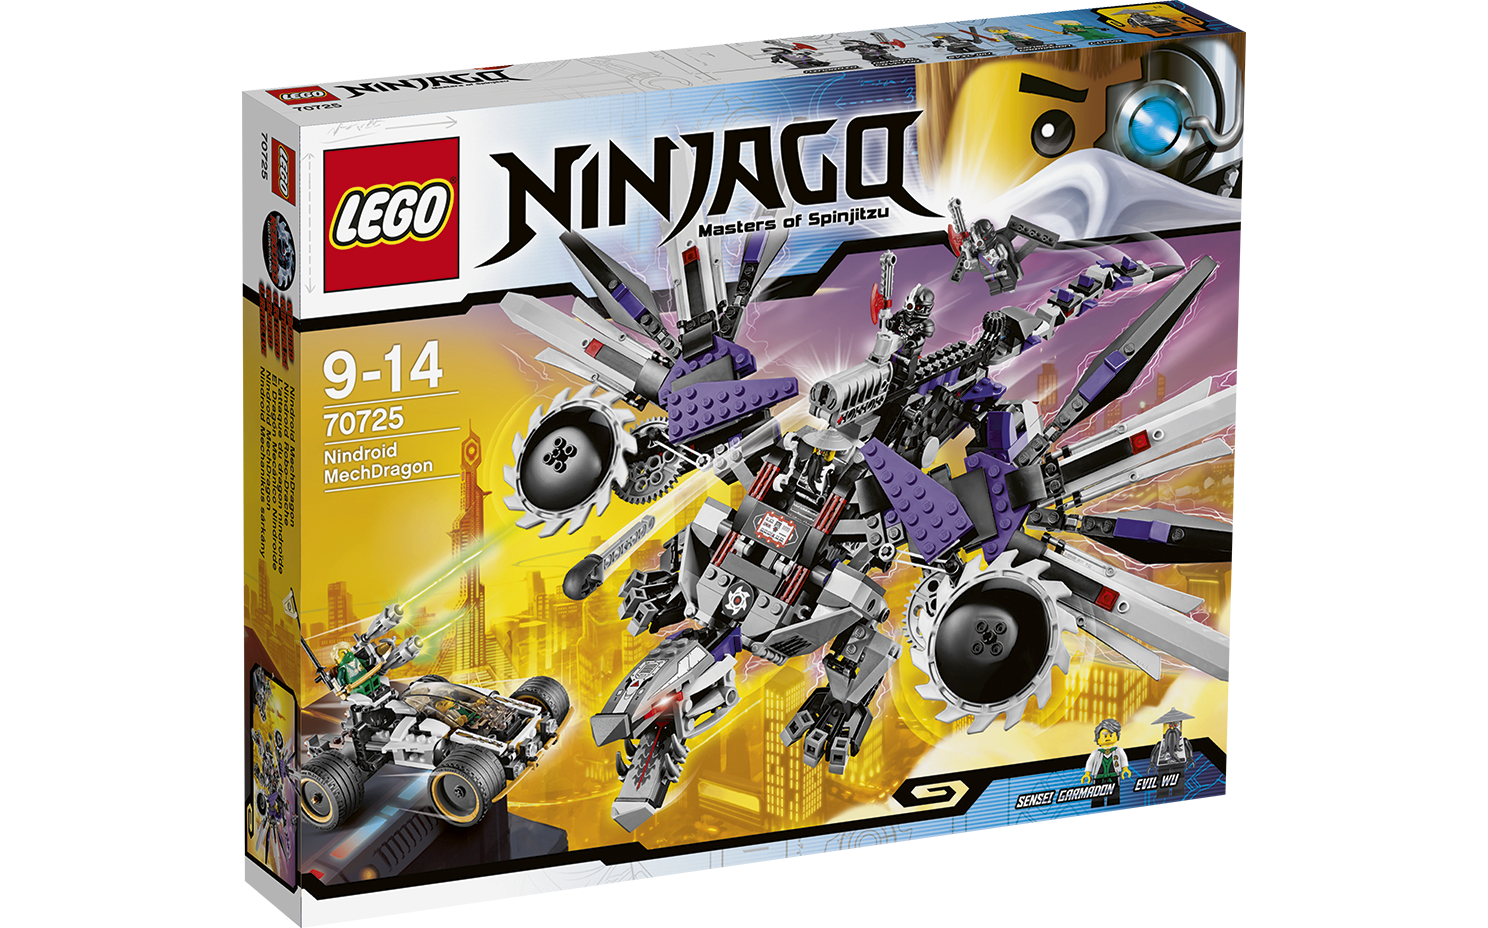 Lego Ninjago Nindroid with Weapon Techno sense Limited Edition Ninja Polybag